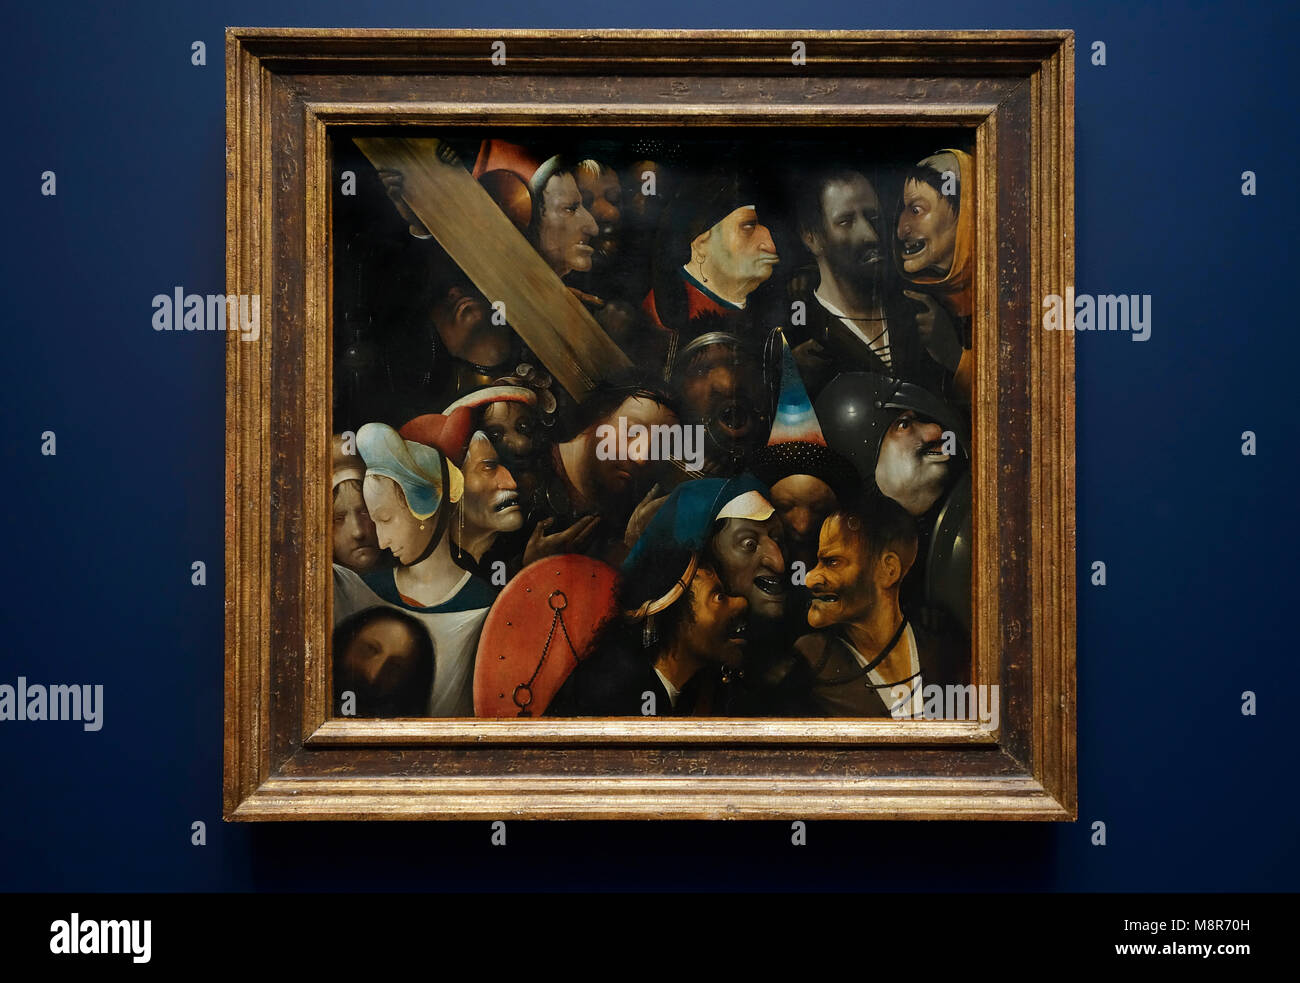 Christus das Kreuz tragen und Anfang des 16. Jahrhunderts Northern Renaissance Öl auf Leinwand Gemälde von niederländischen Maler Hieronymus Bosch/Hieronymus Bosch Stockfoto